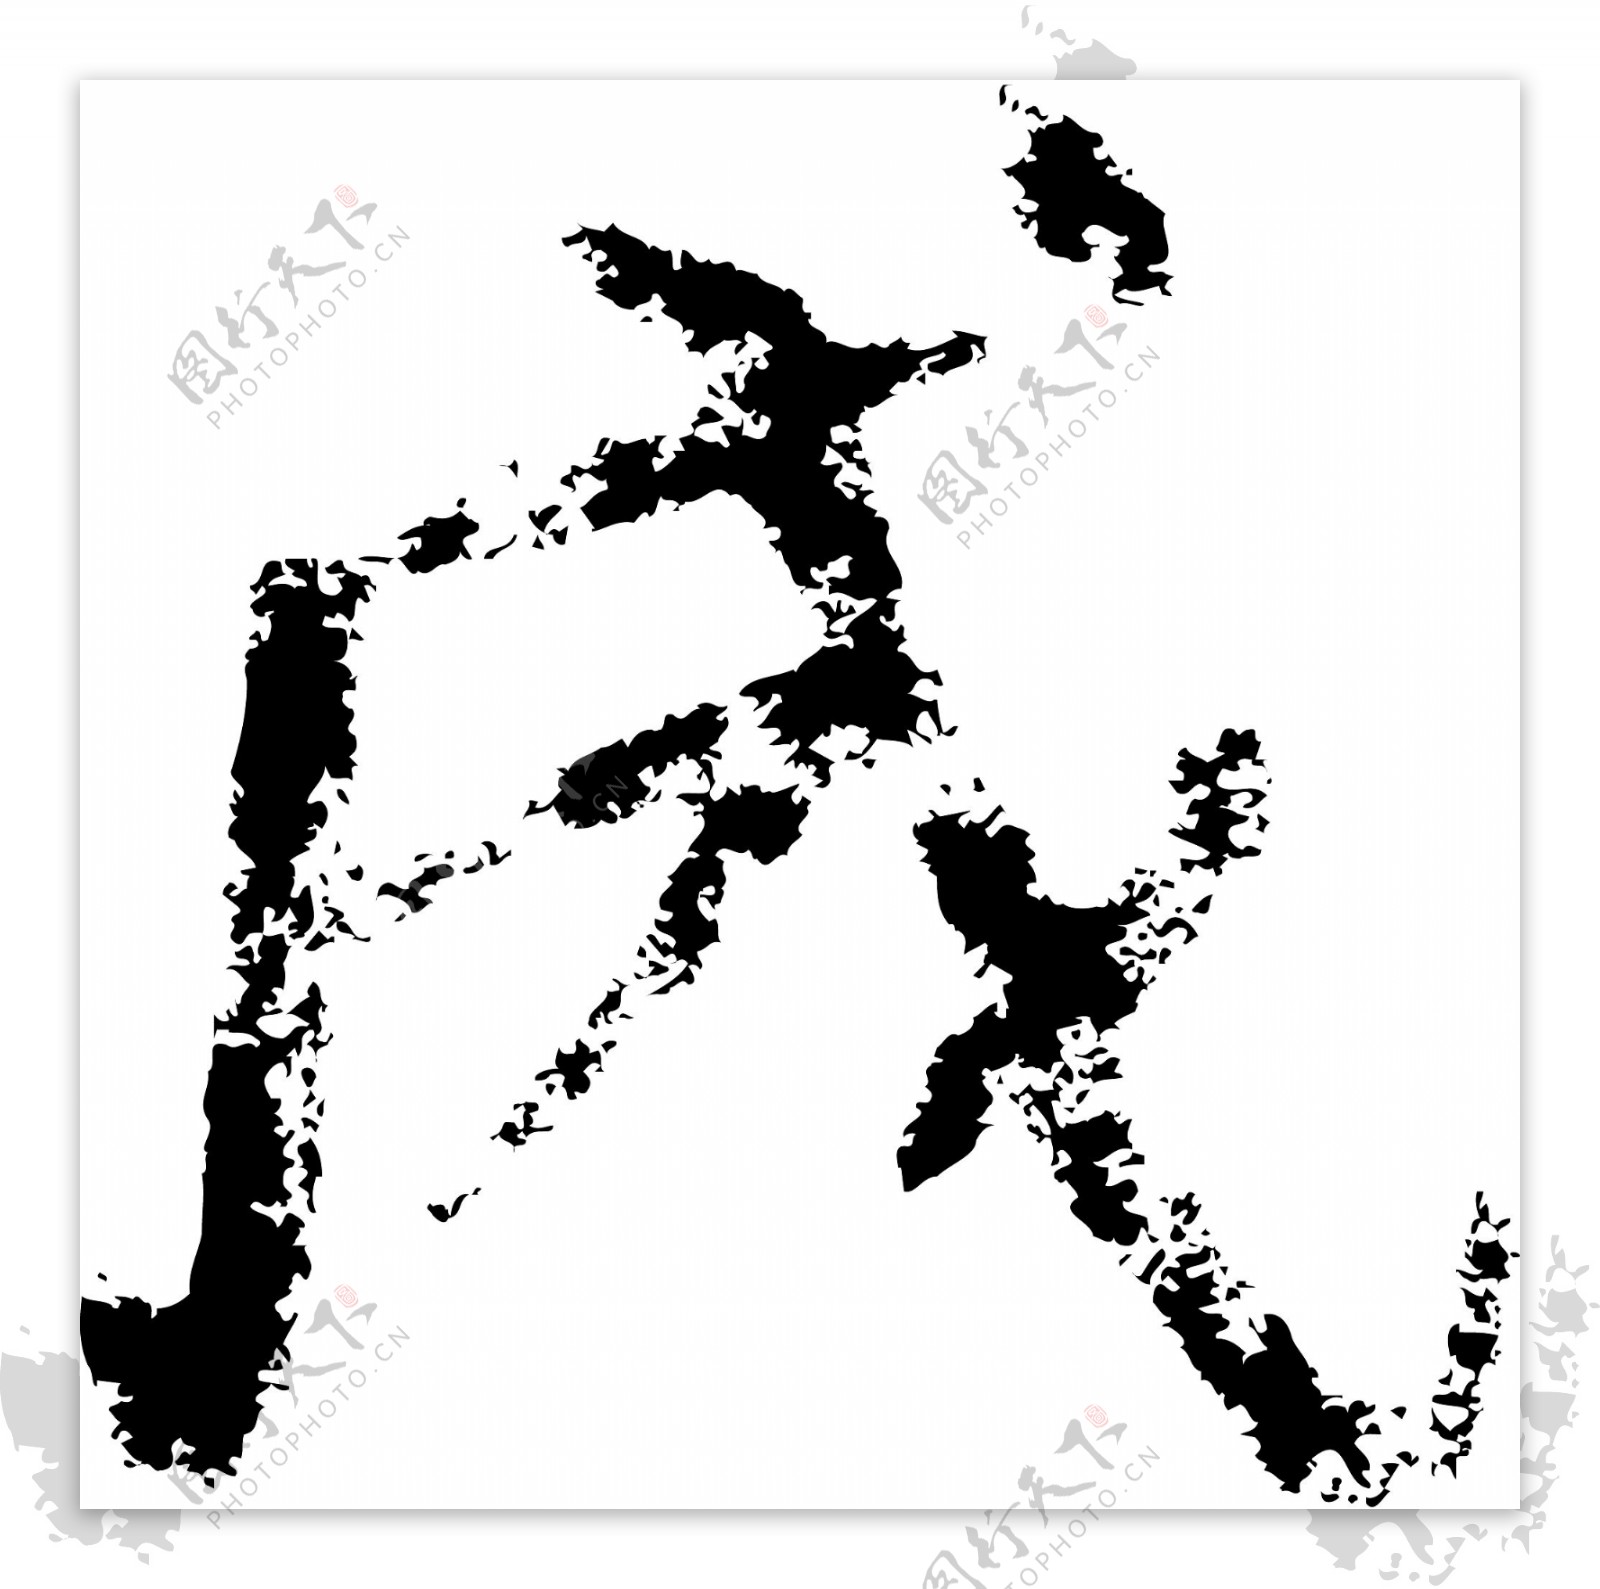 成书法汉字六画传统艺术矢量AI格式3838